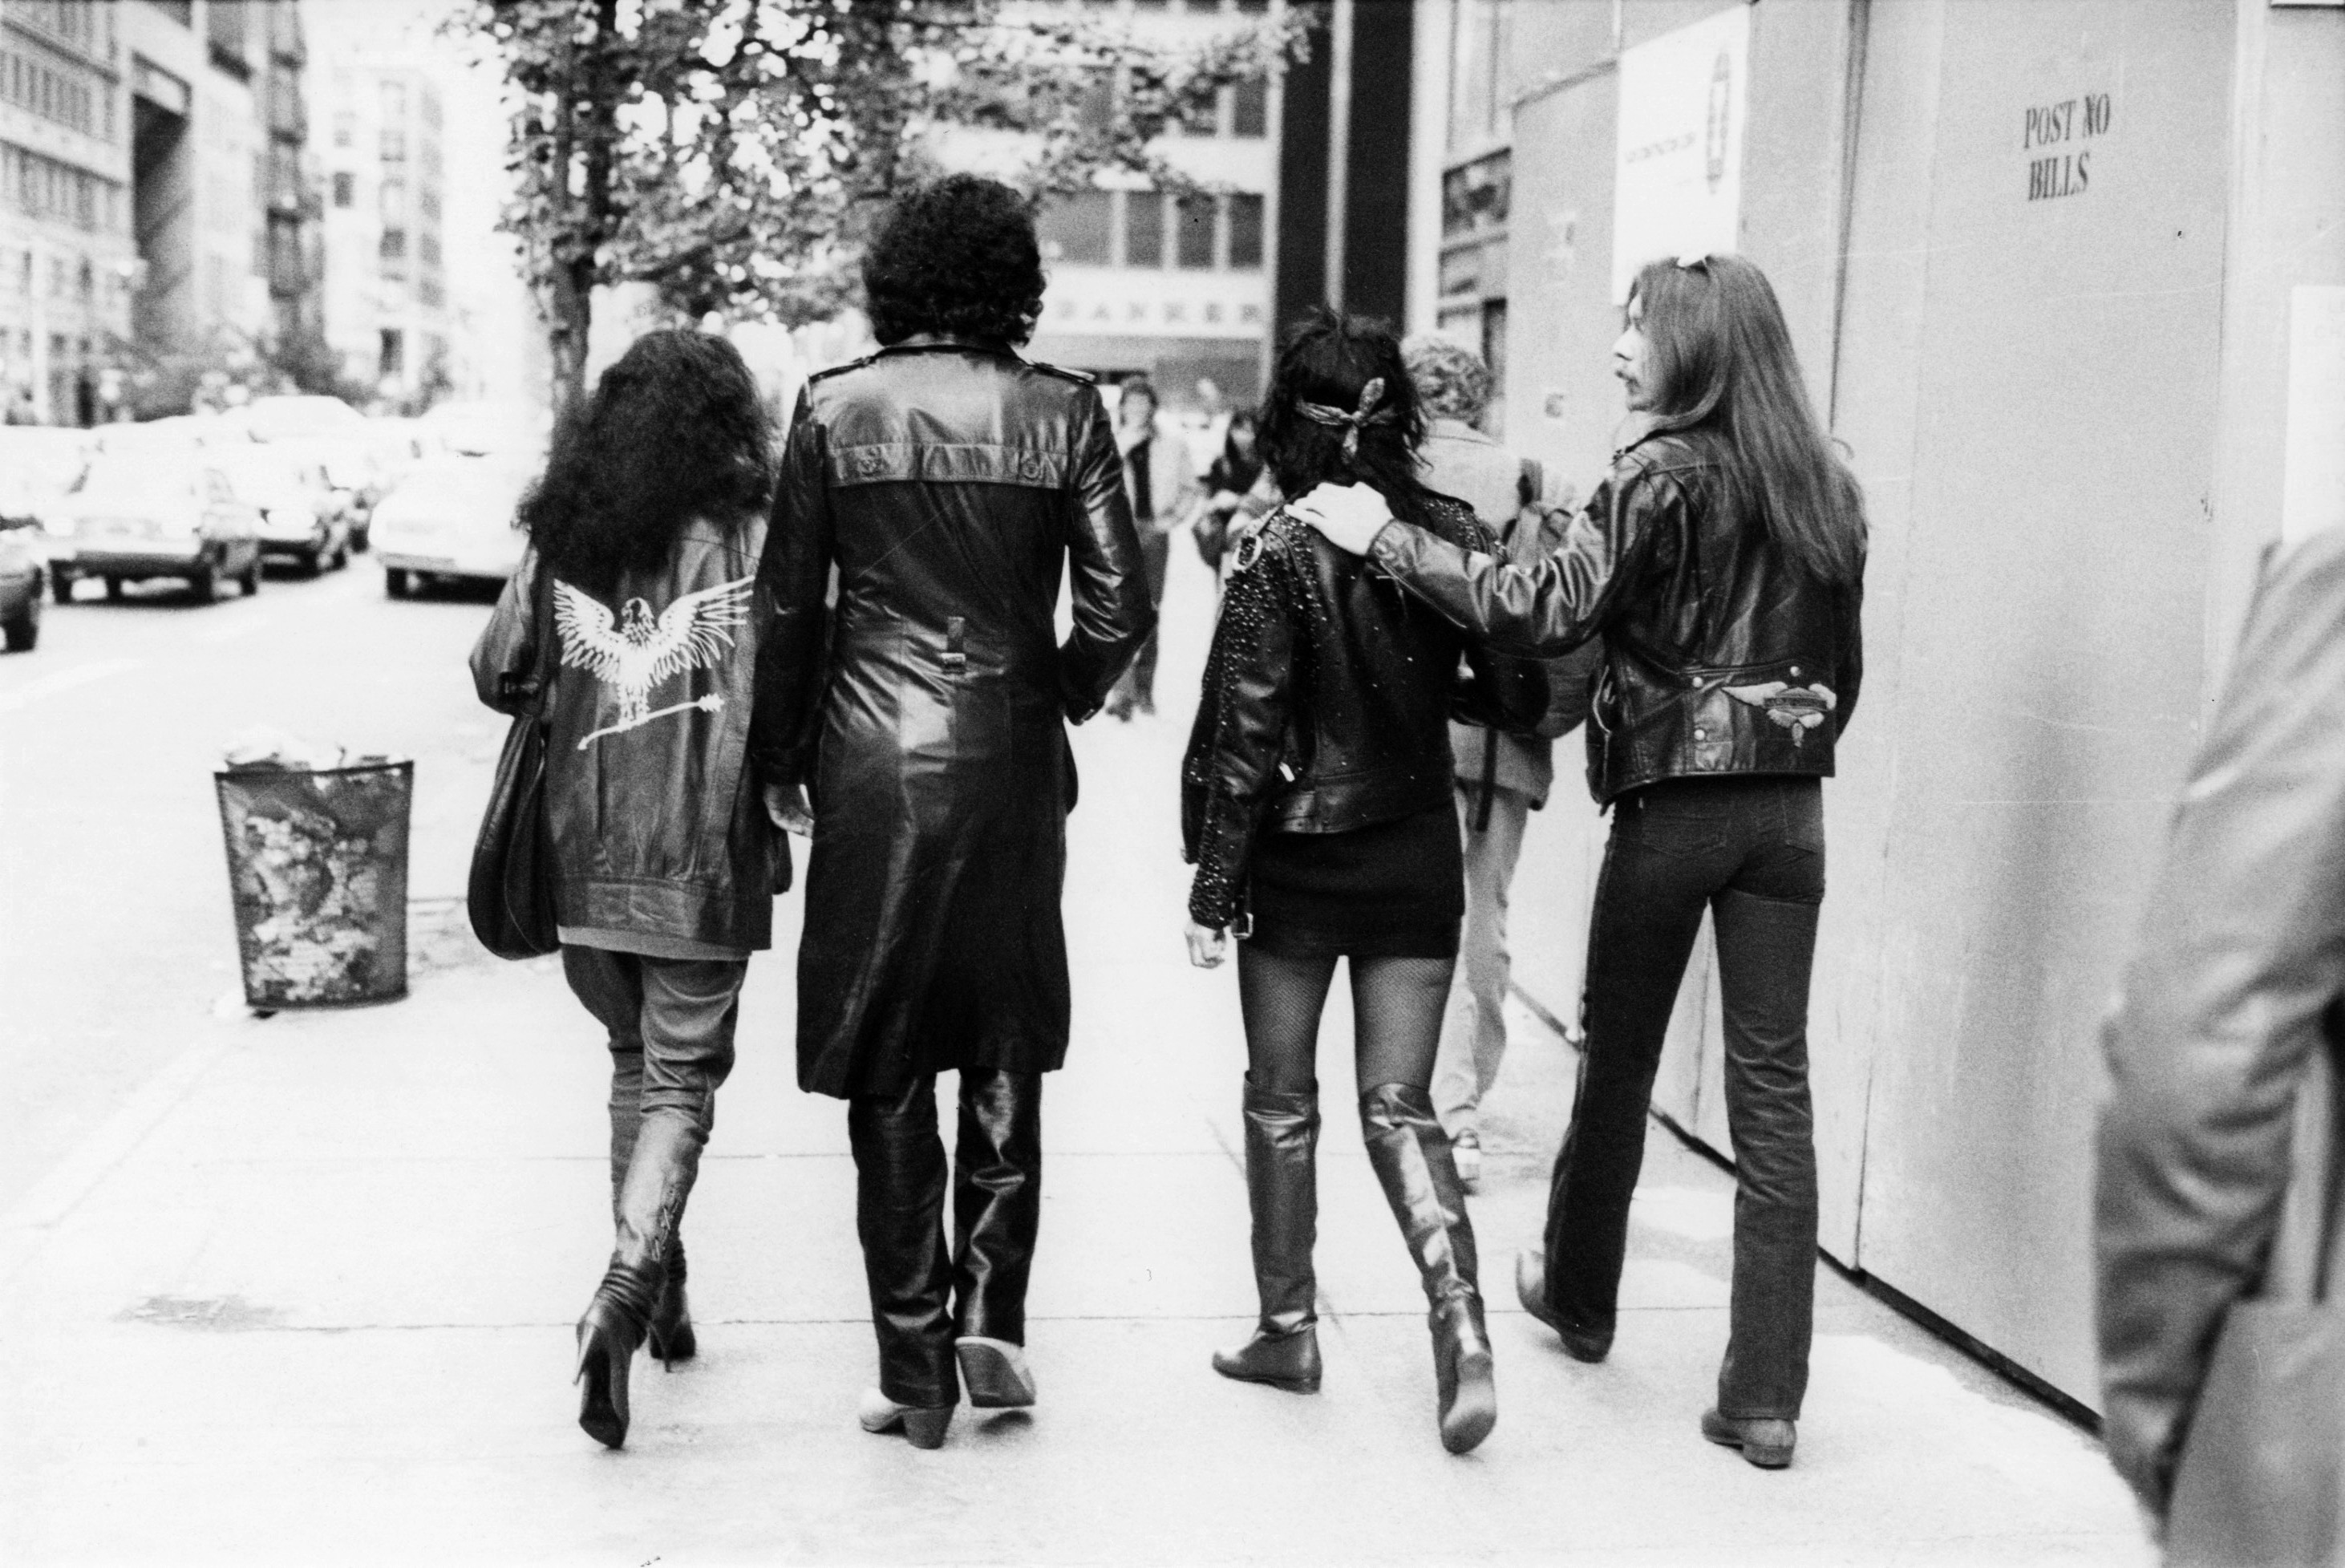 Дайана Росс, Джин Симмонс, Шер и Лес Дудек, Нью-Йорк, 1979-1982. Фотограф Билл Каннингем